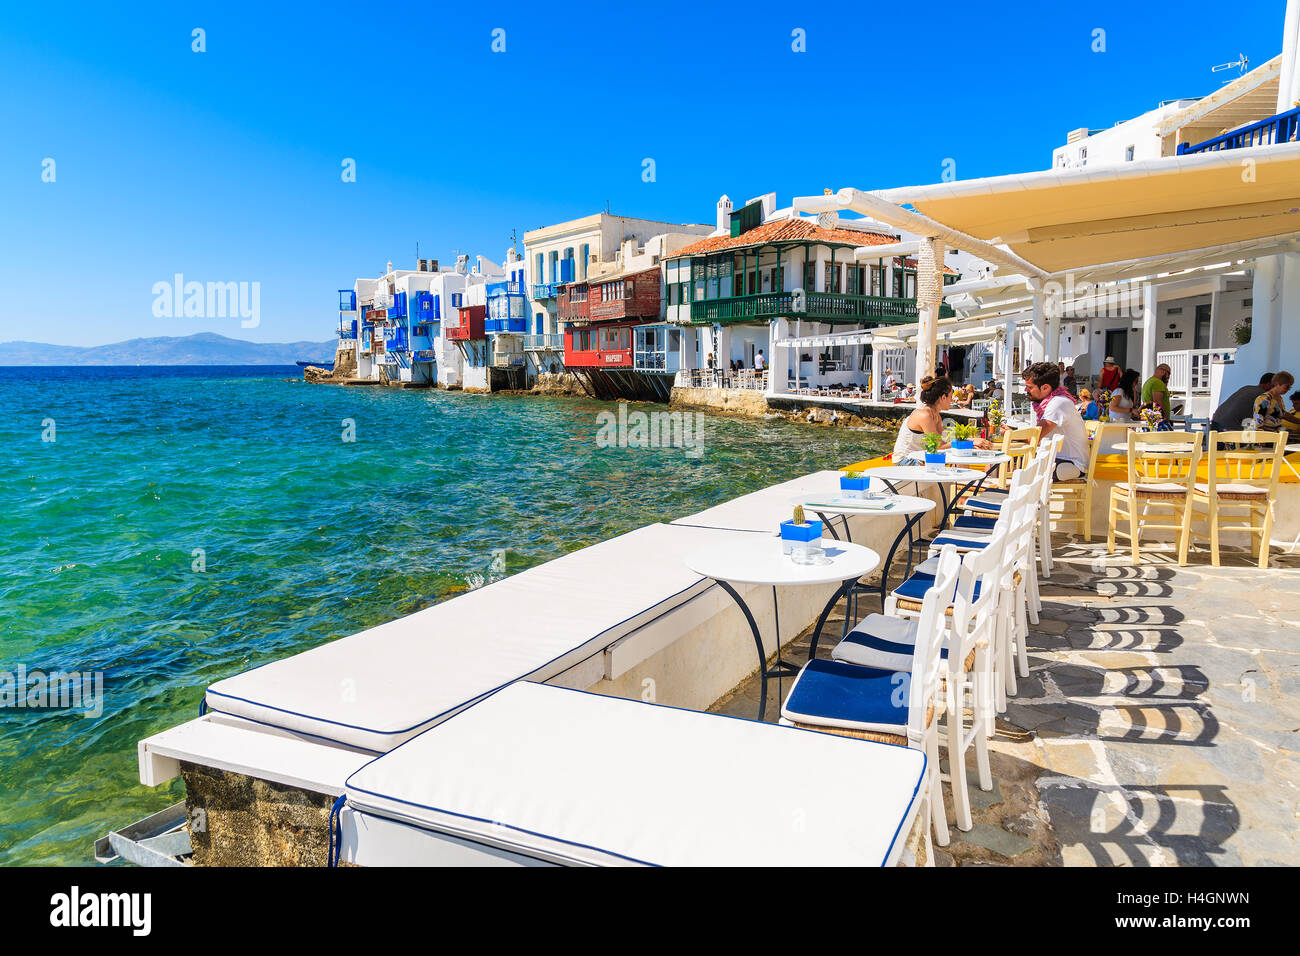 La petite Venise, l'île de Mykonos - 16 MAI 2016 : les gens de manger dans une taverne grecque typique petite Venise partie de la ville de Mykonos, Mykon Banque D'Images